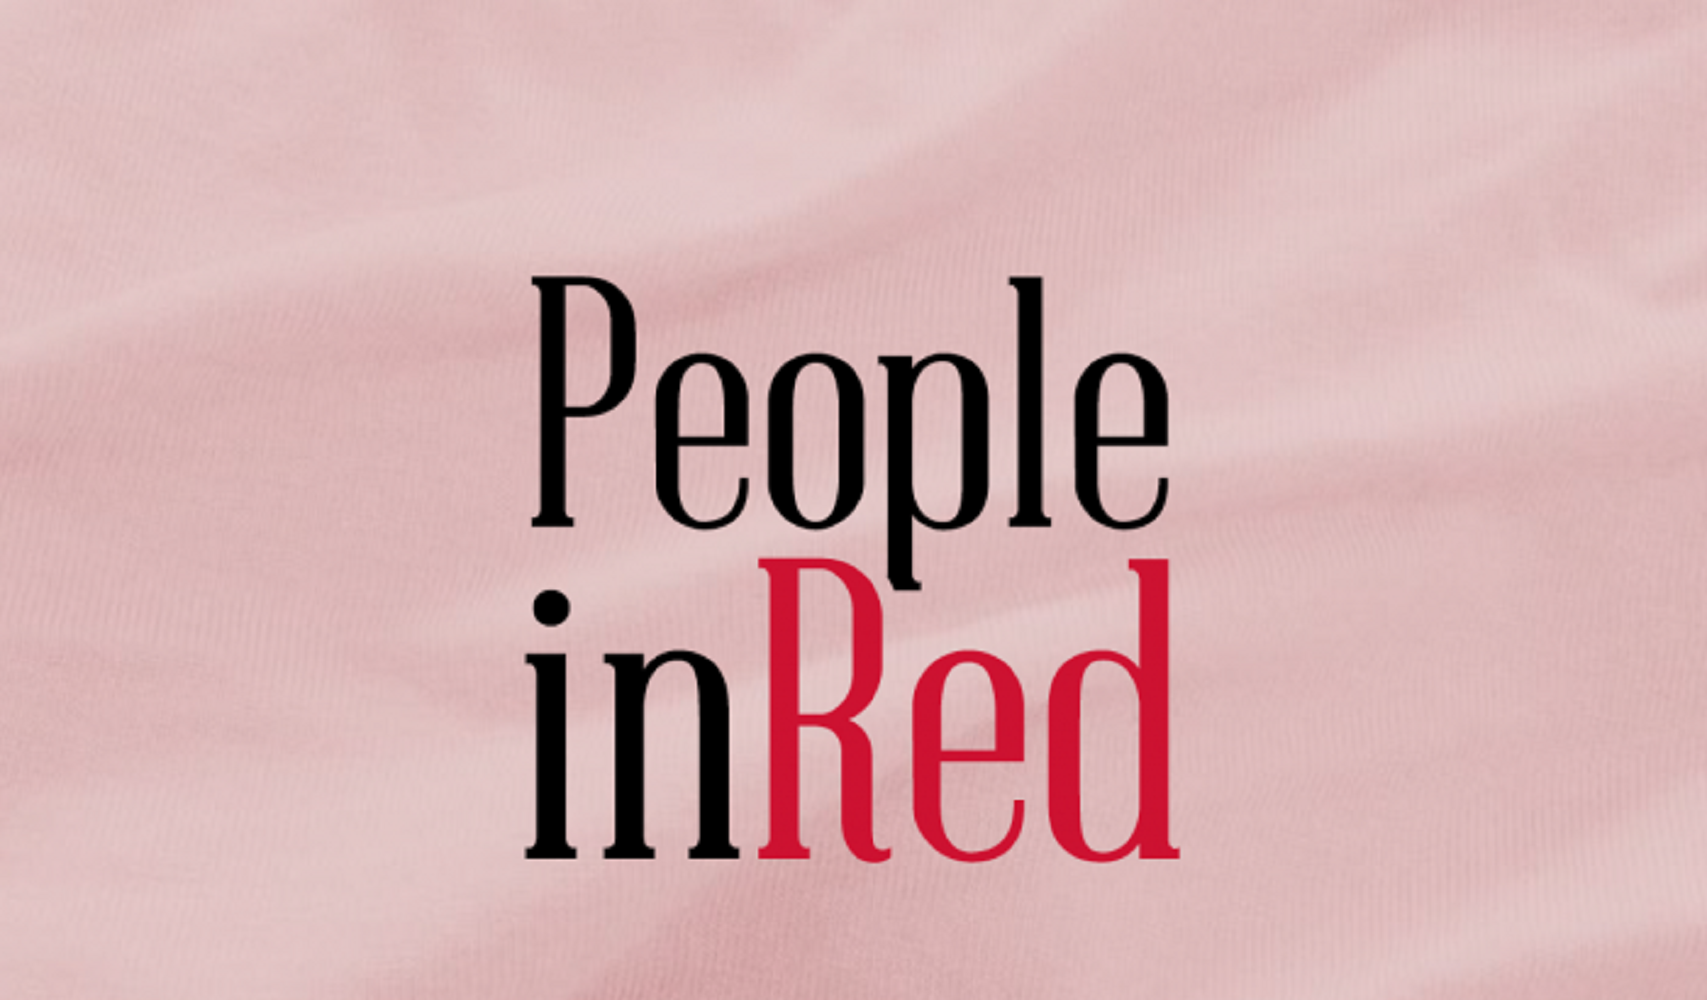 La fiesta 'People In Red' recauda 456.000 euros para la lucha contra el sida